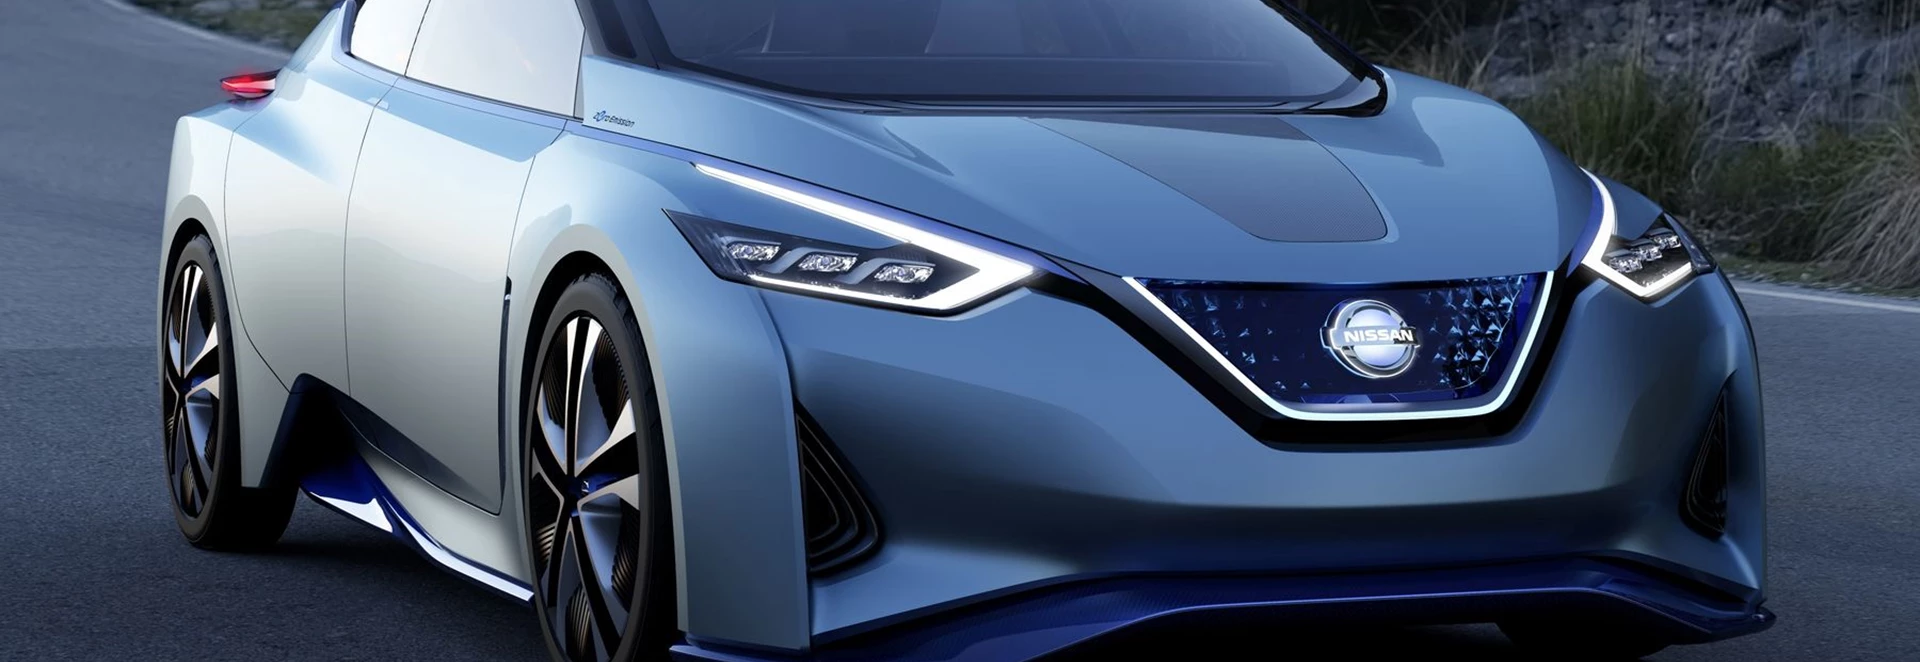 Nissan concept previews new LEAF design and autonomous driving